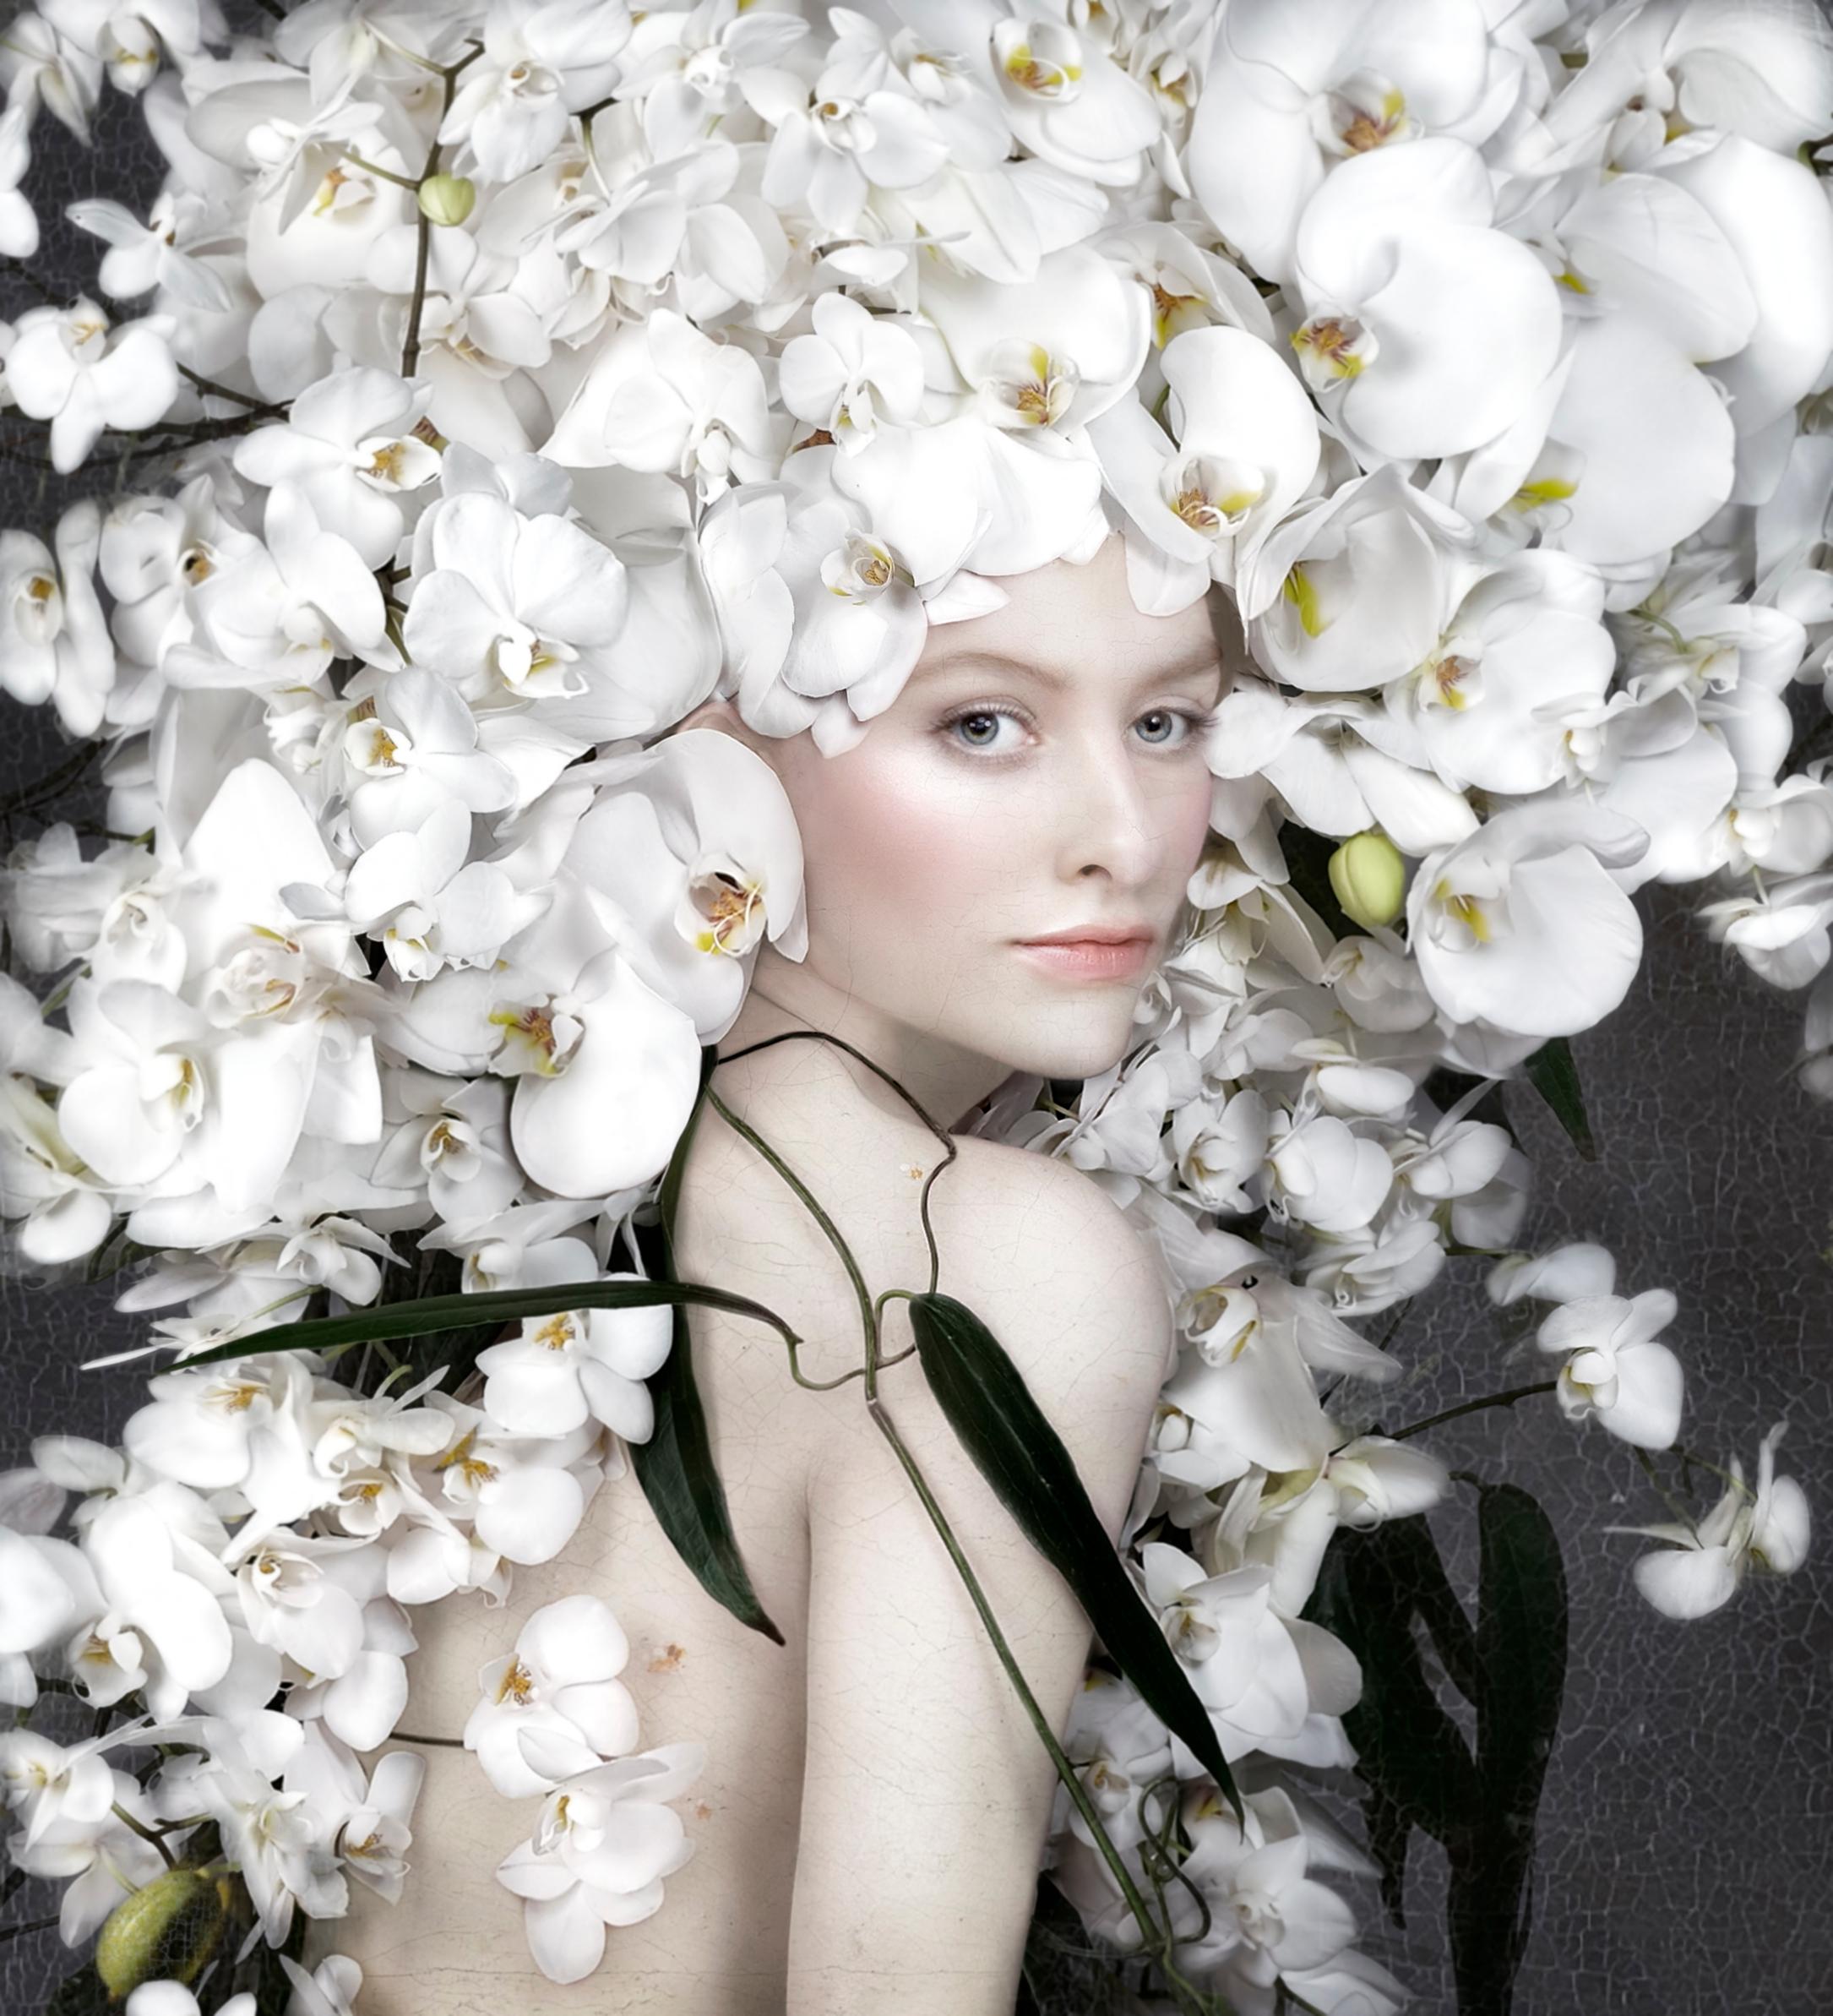 "DIE WIEDERGEBURT DER DUTCH FLOWER COLLECTION
Isabelle van Zeijl hat ein Auge auf 400 Millionen Blumen geworfen, die während der Quarantäne zerstört wurden. Mit Blumen, die sie von ihren lokalen Gärtnern erhalten hat, hat Van Zeijl eine Reihe von